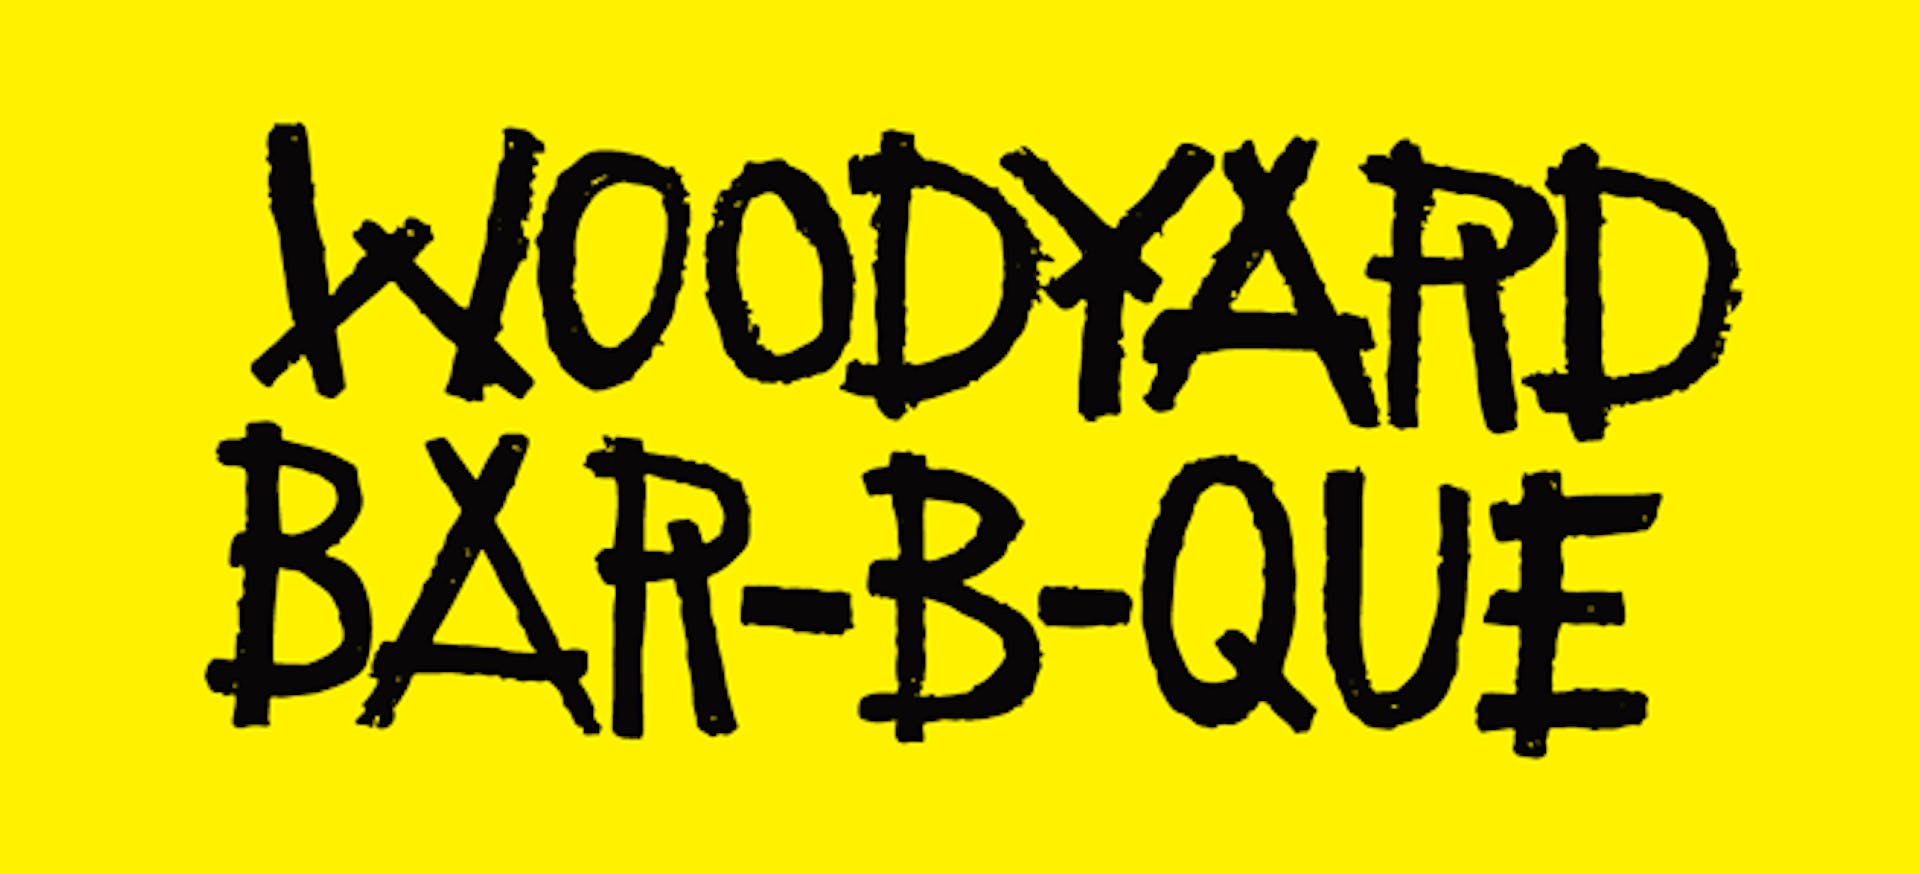 Woodyard Bar